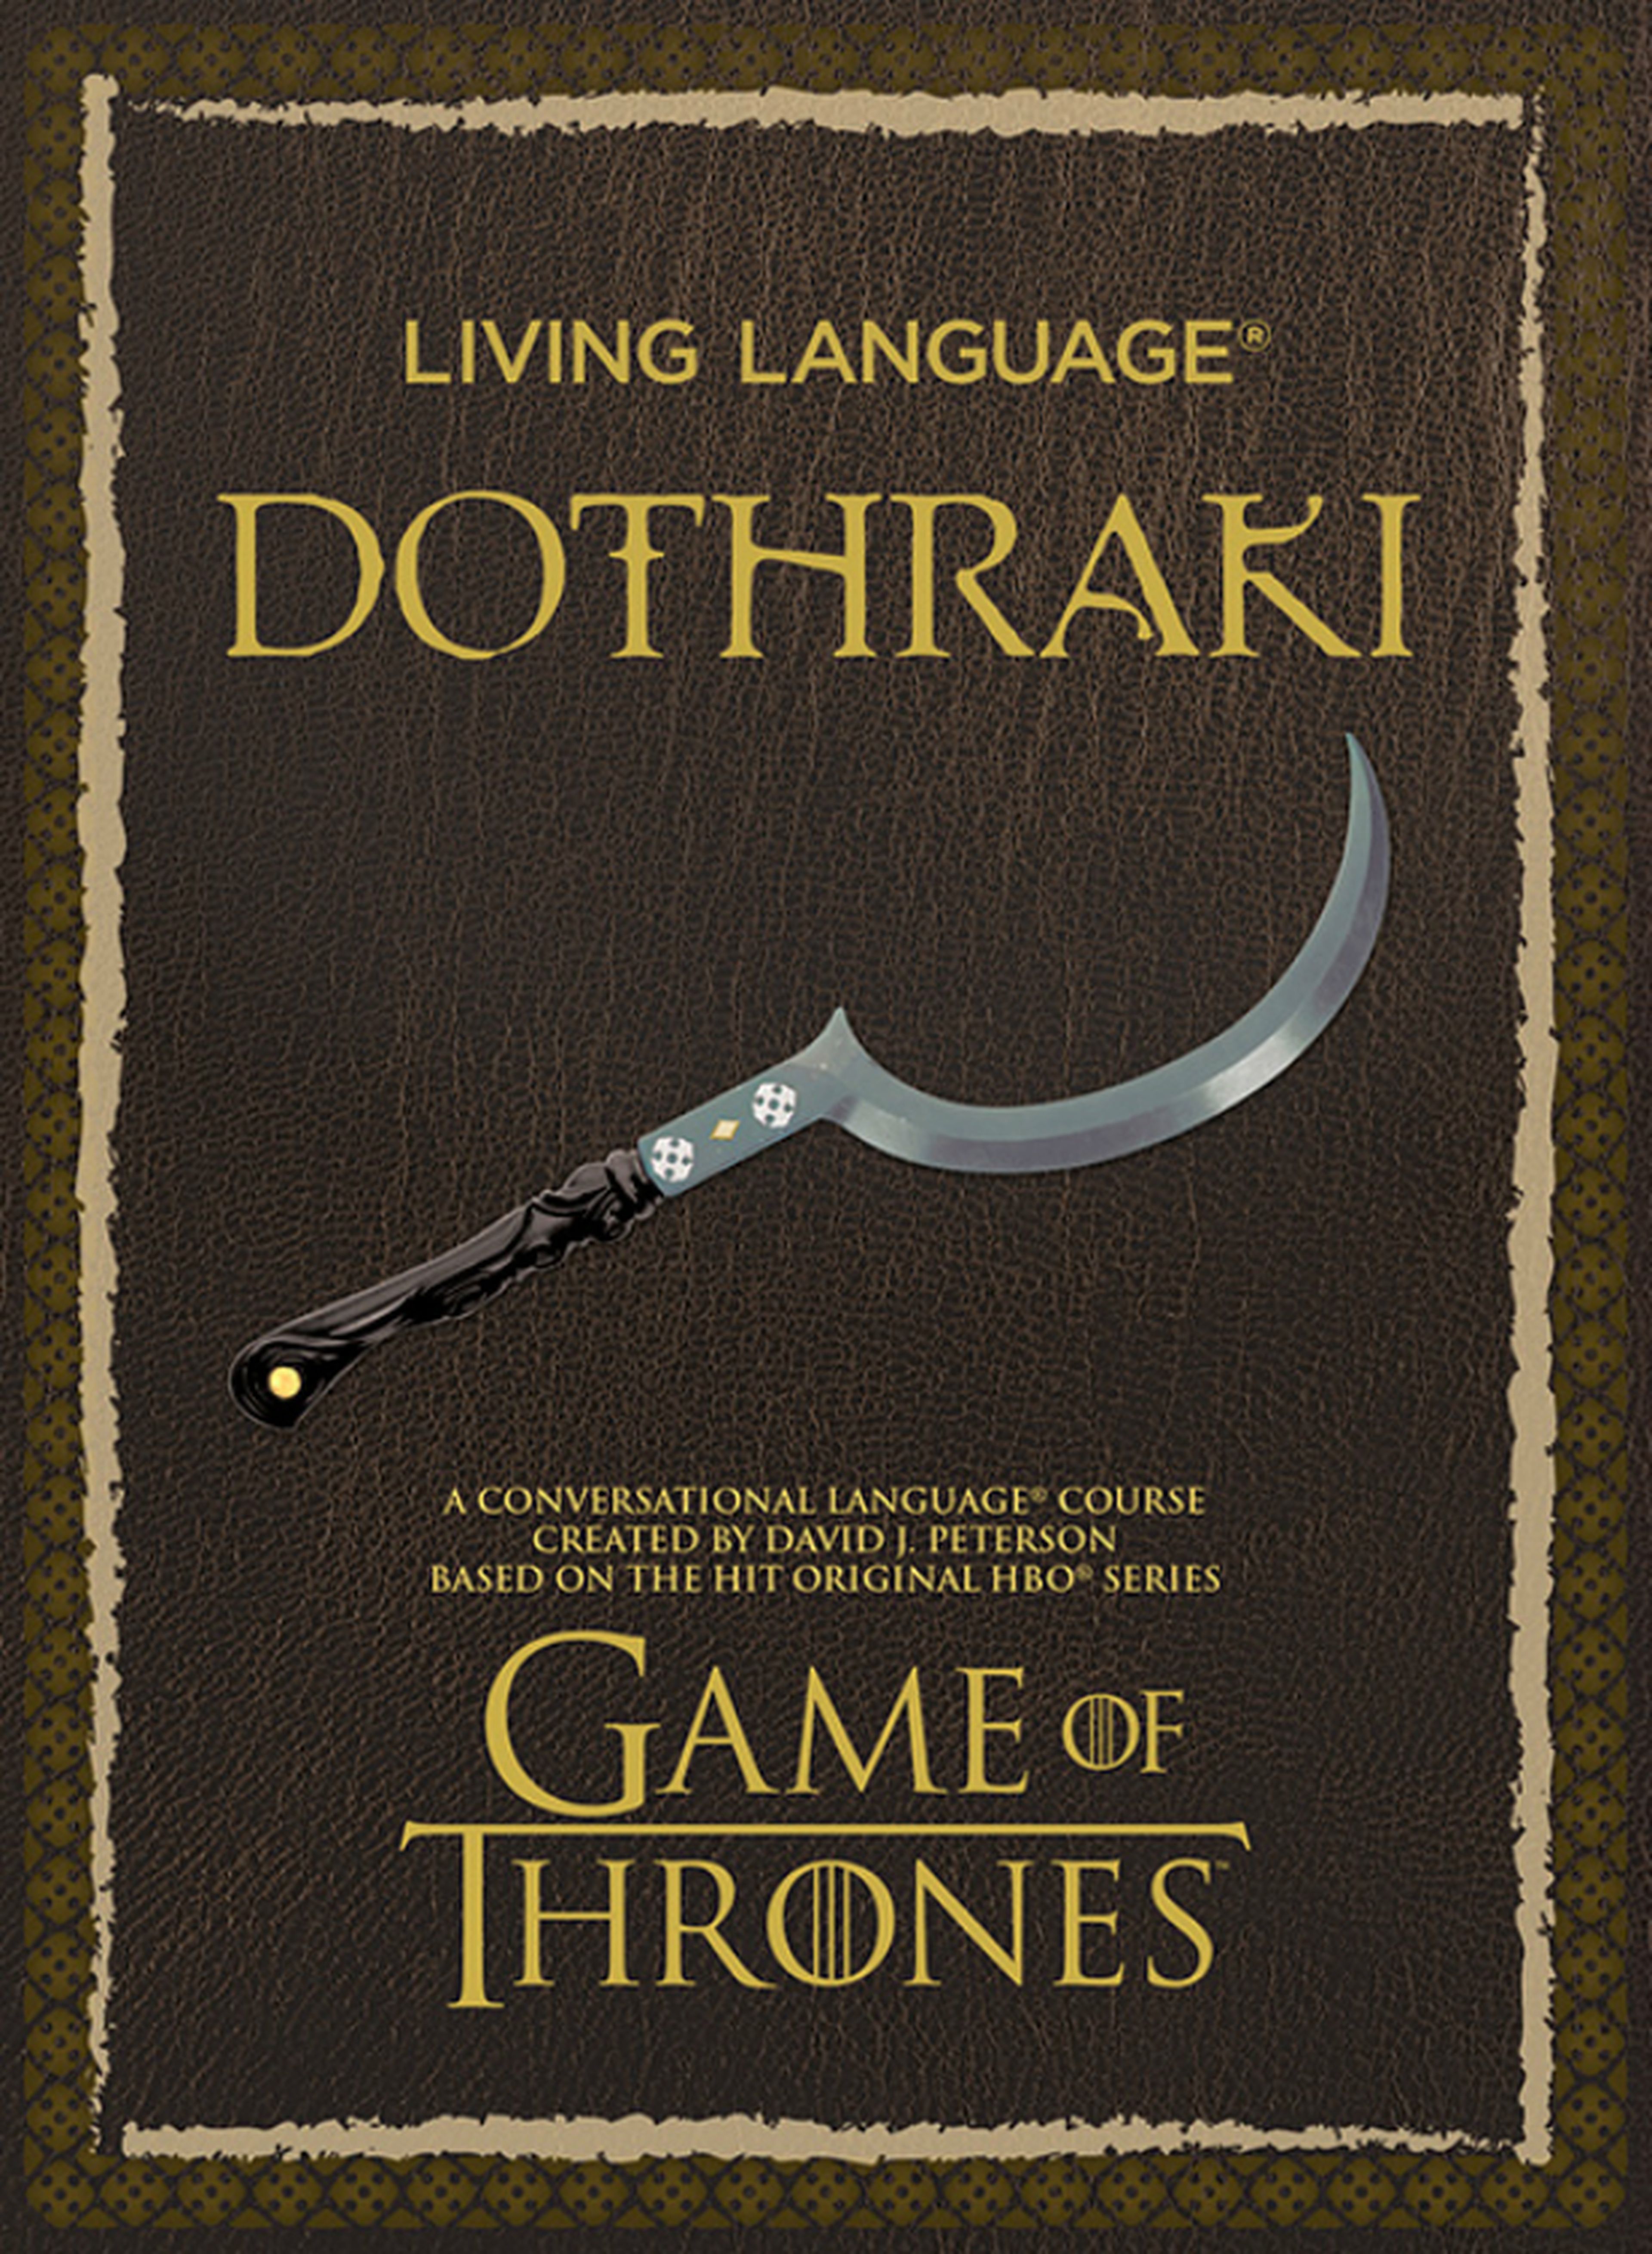 Juego de tronos: entrevista con el creador del dothraki, que nos enseña cómo hablarlo